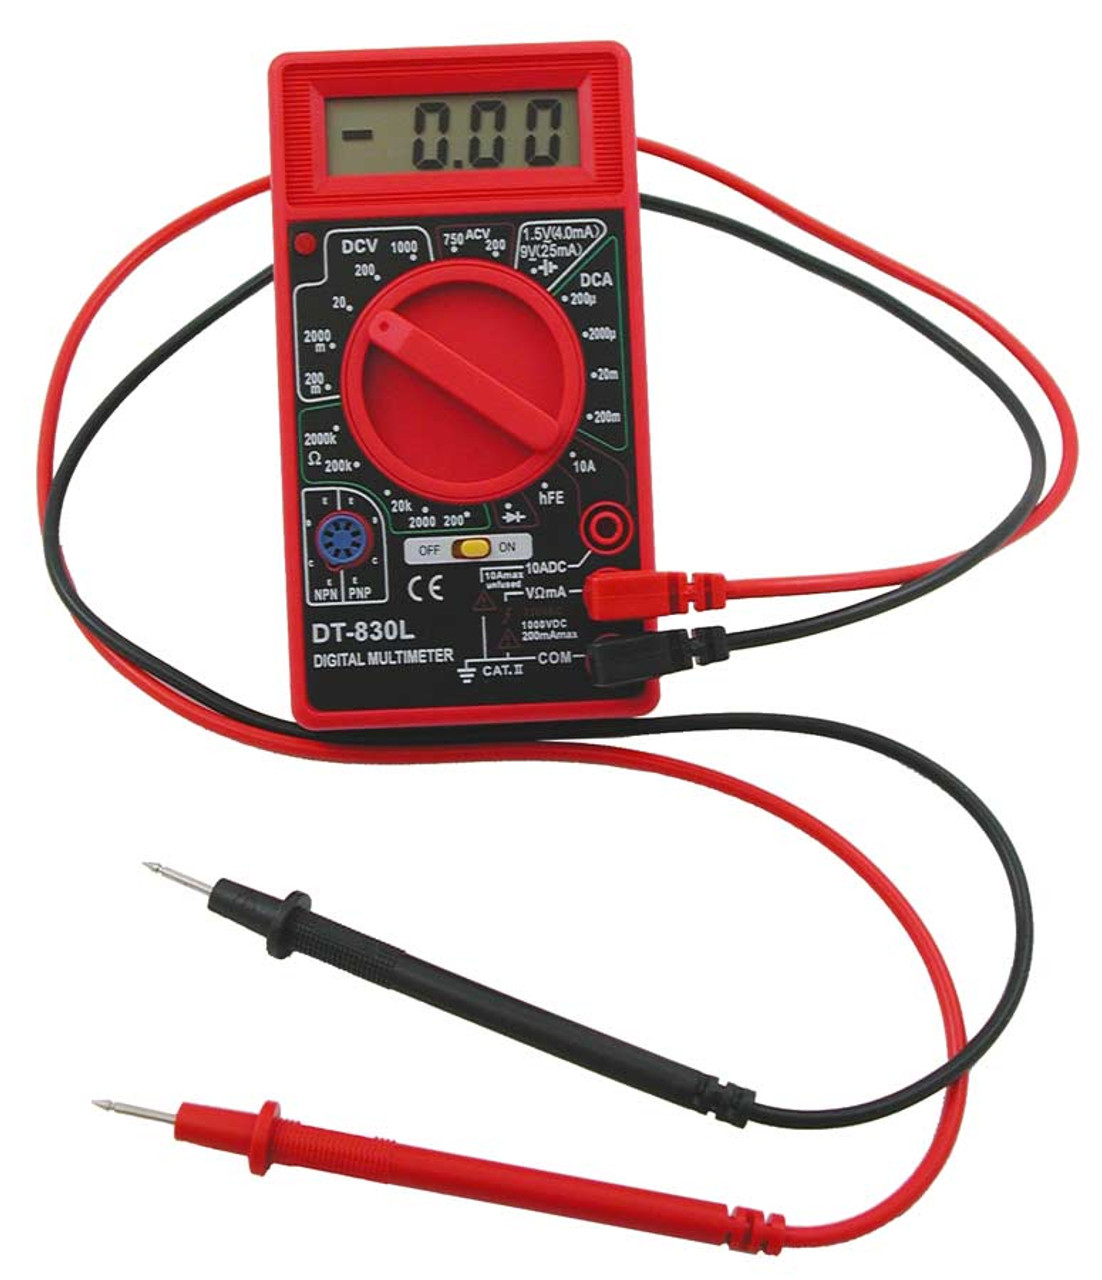 Digital Multimeter | VOM Multi Tester for Voltage, Current